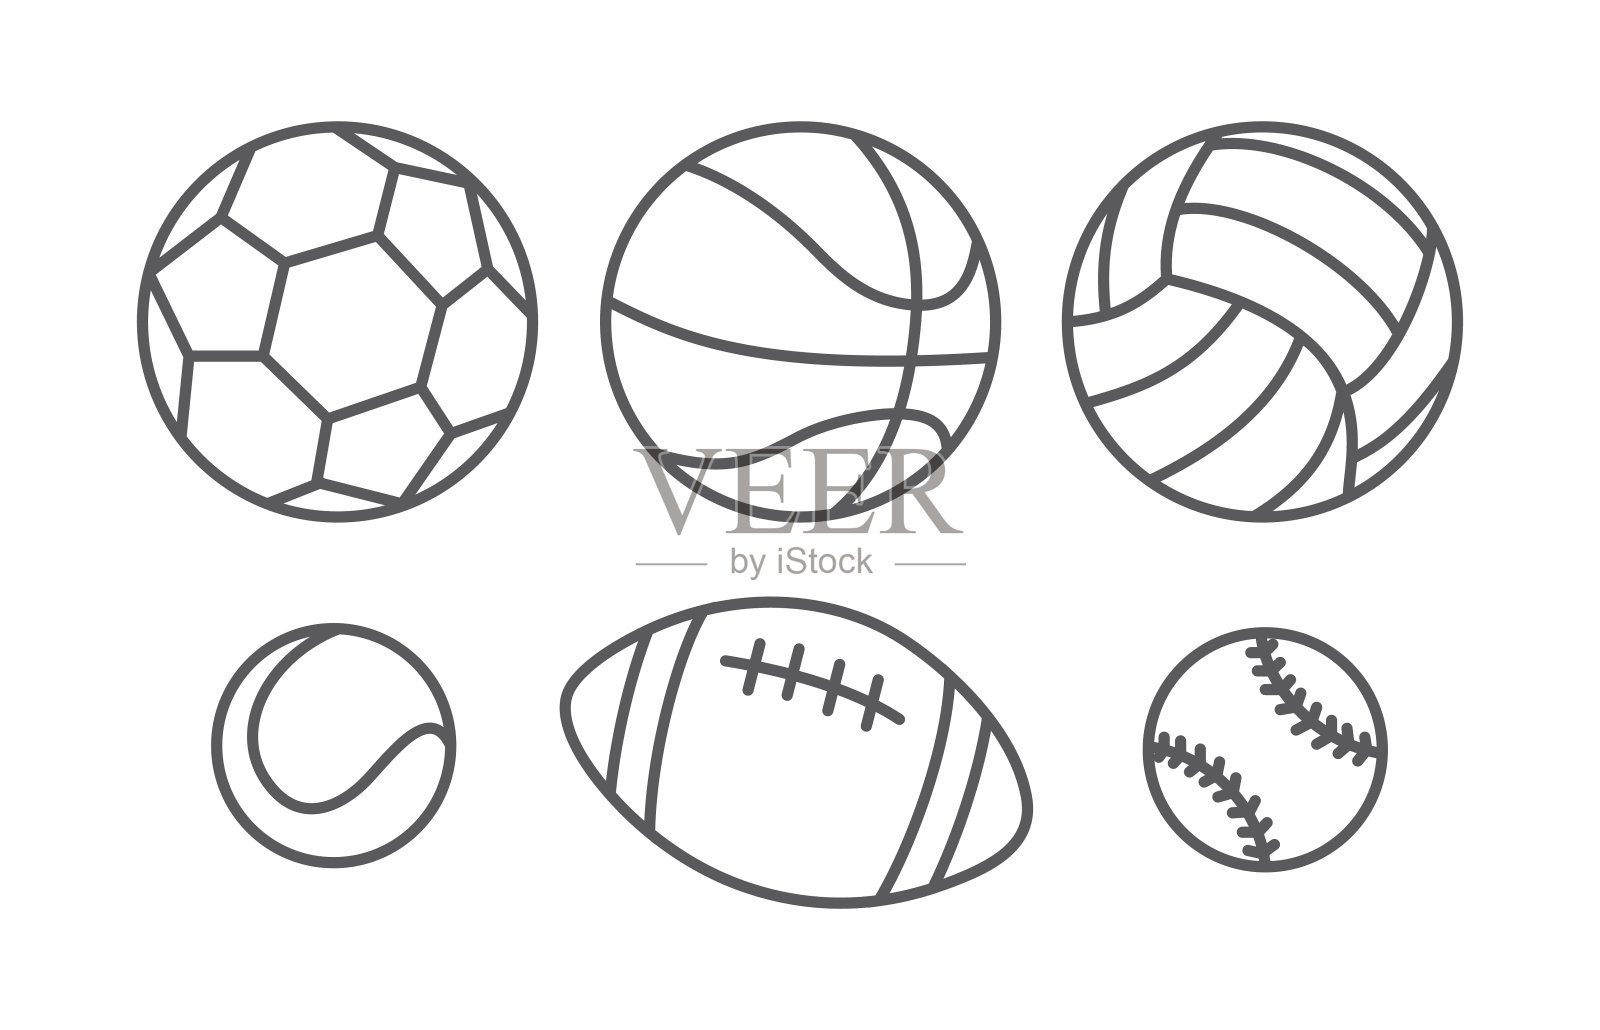 直线风格的运动球插画图片素材